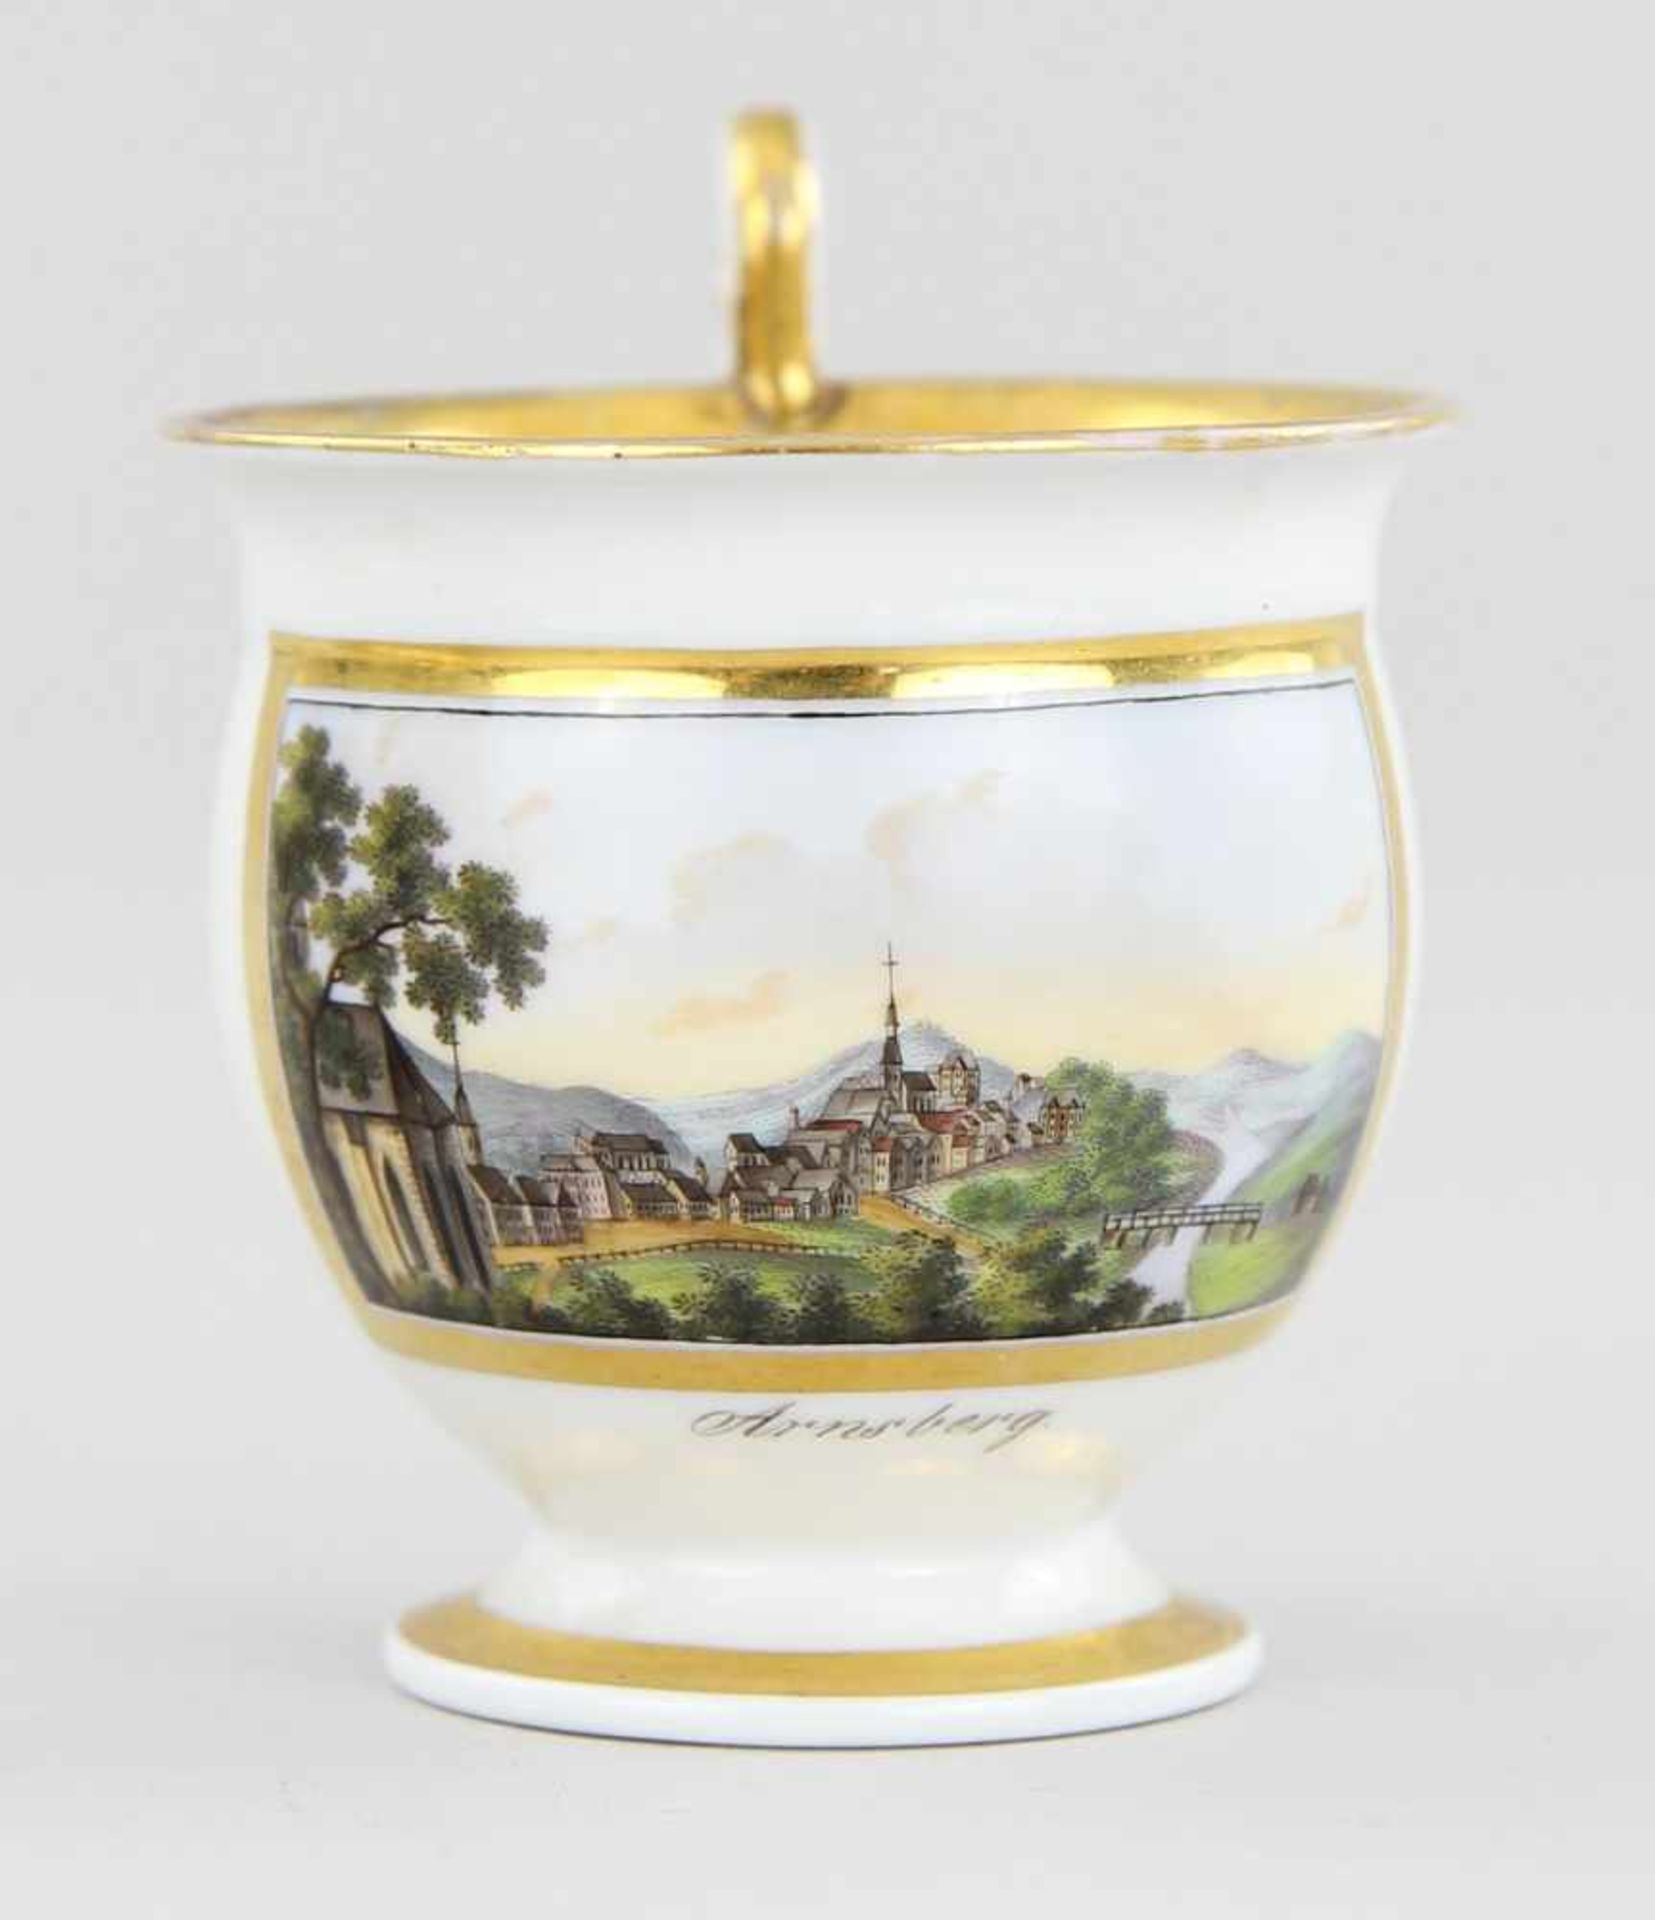 Ansichtentasse "Arnsberg" mit Untertasse Porzellan farbig bemalt und vergoldet, gefußte - Bild 2 aus 3